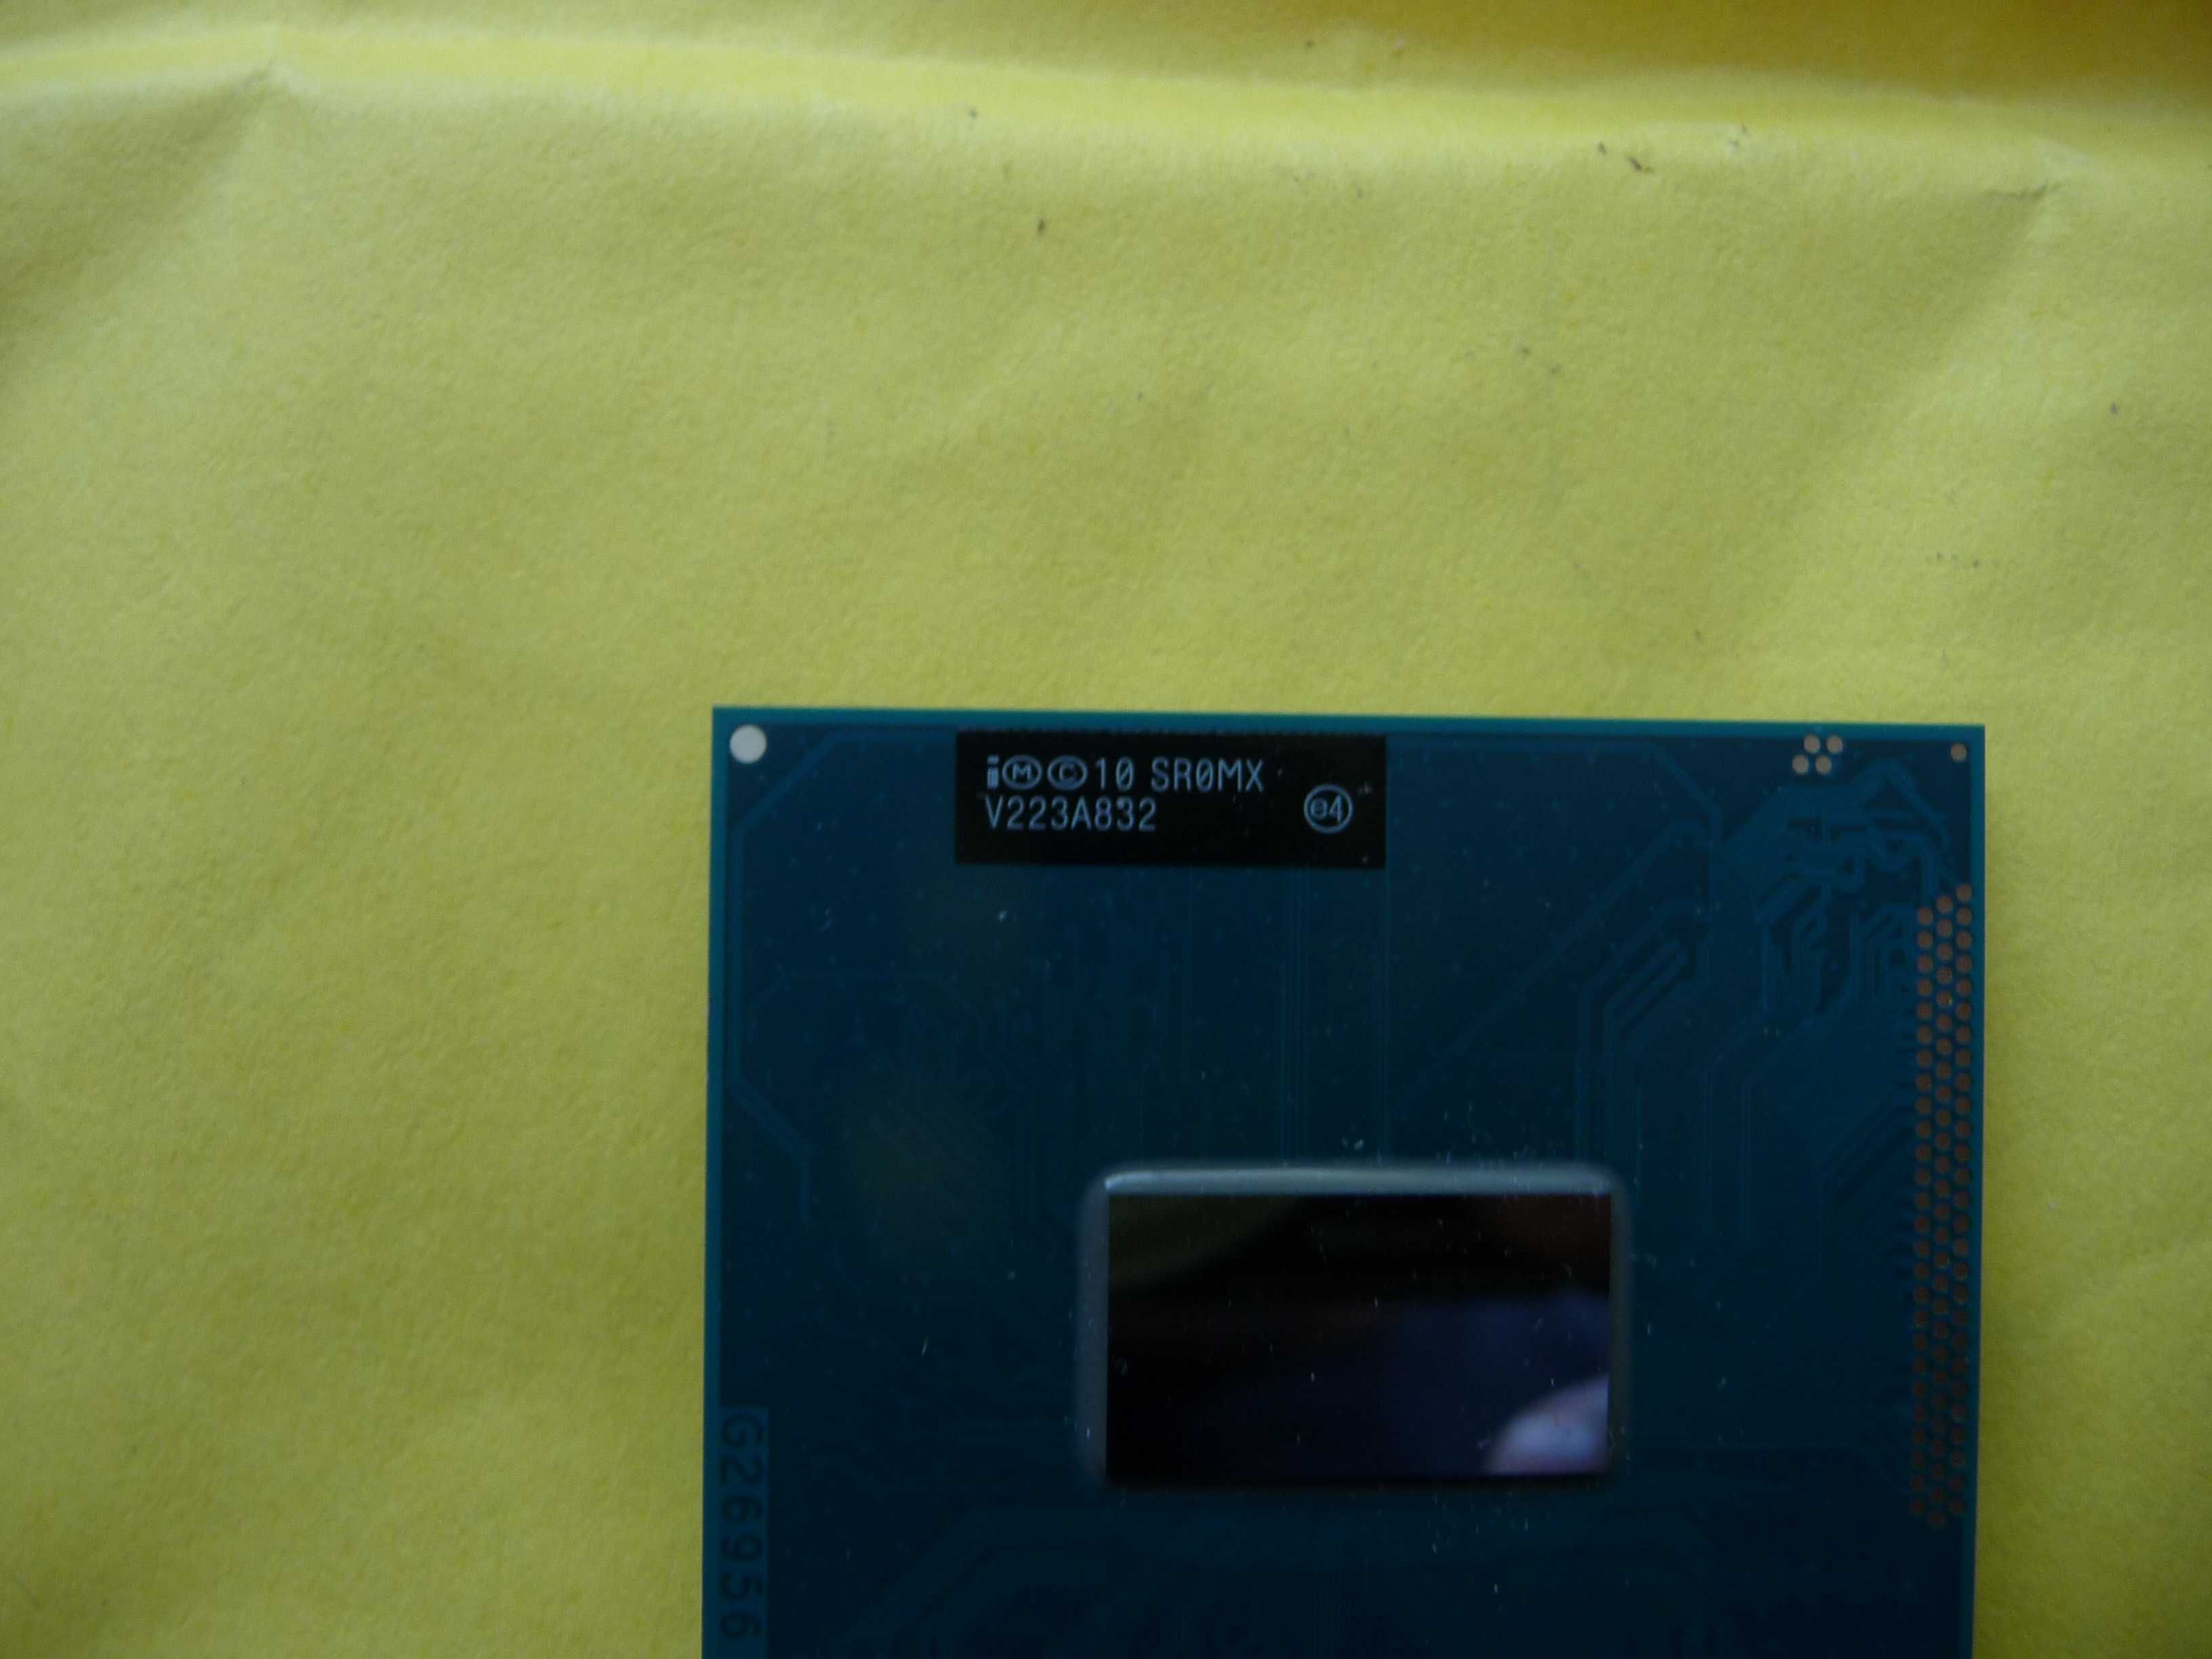 Intel Core i5-3320M (3 МБ, 2,60-3,30 ГГц) (SR0MX) Socket G2